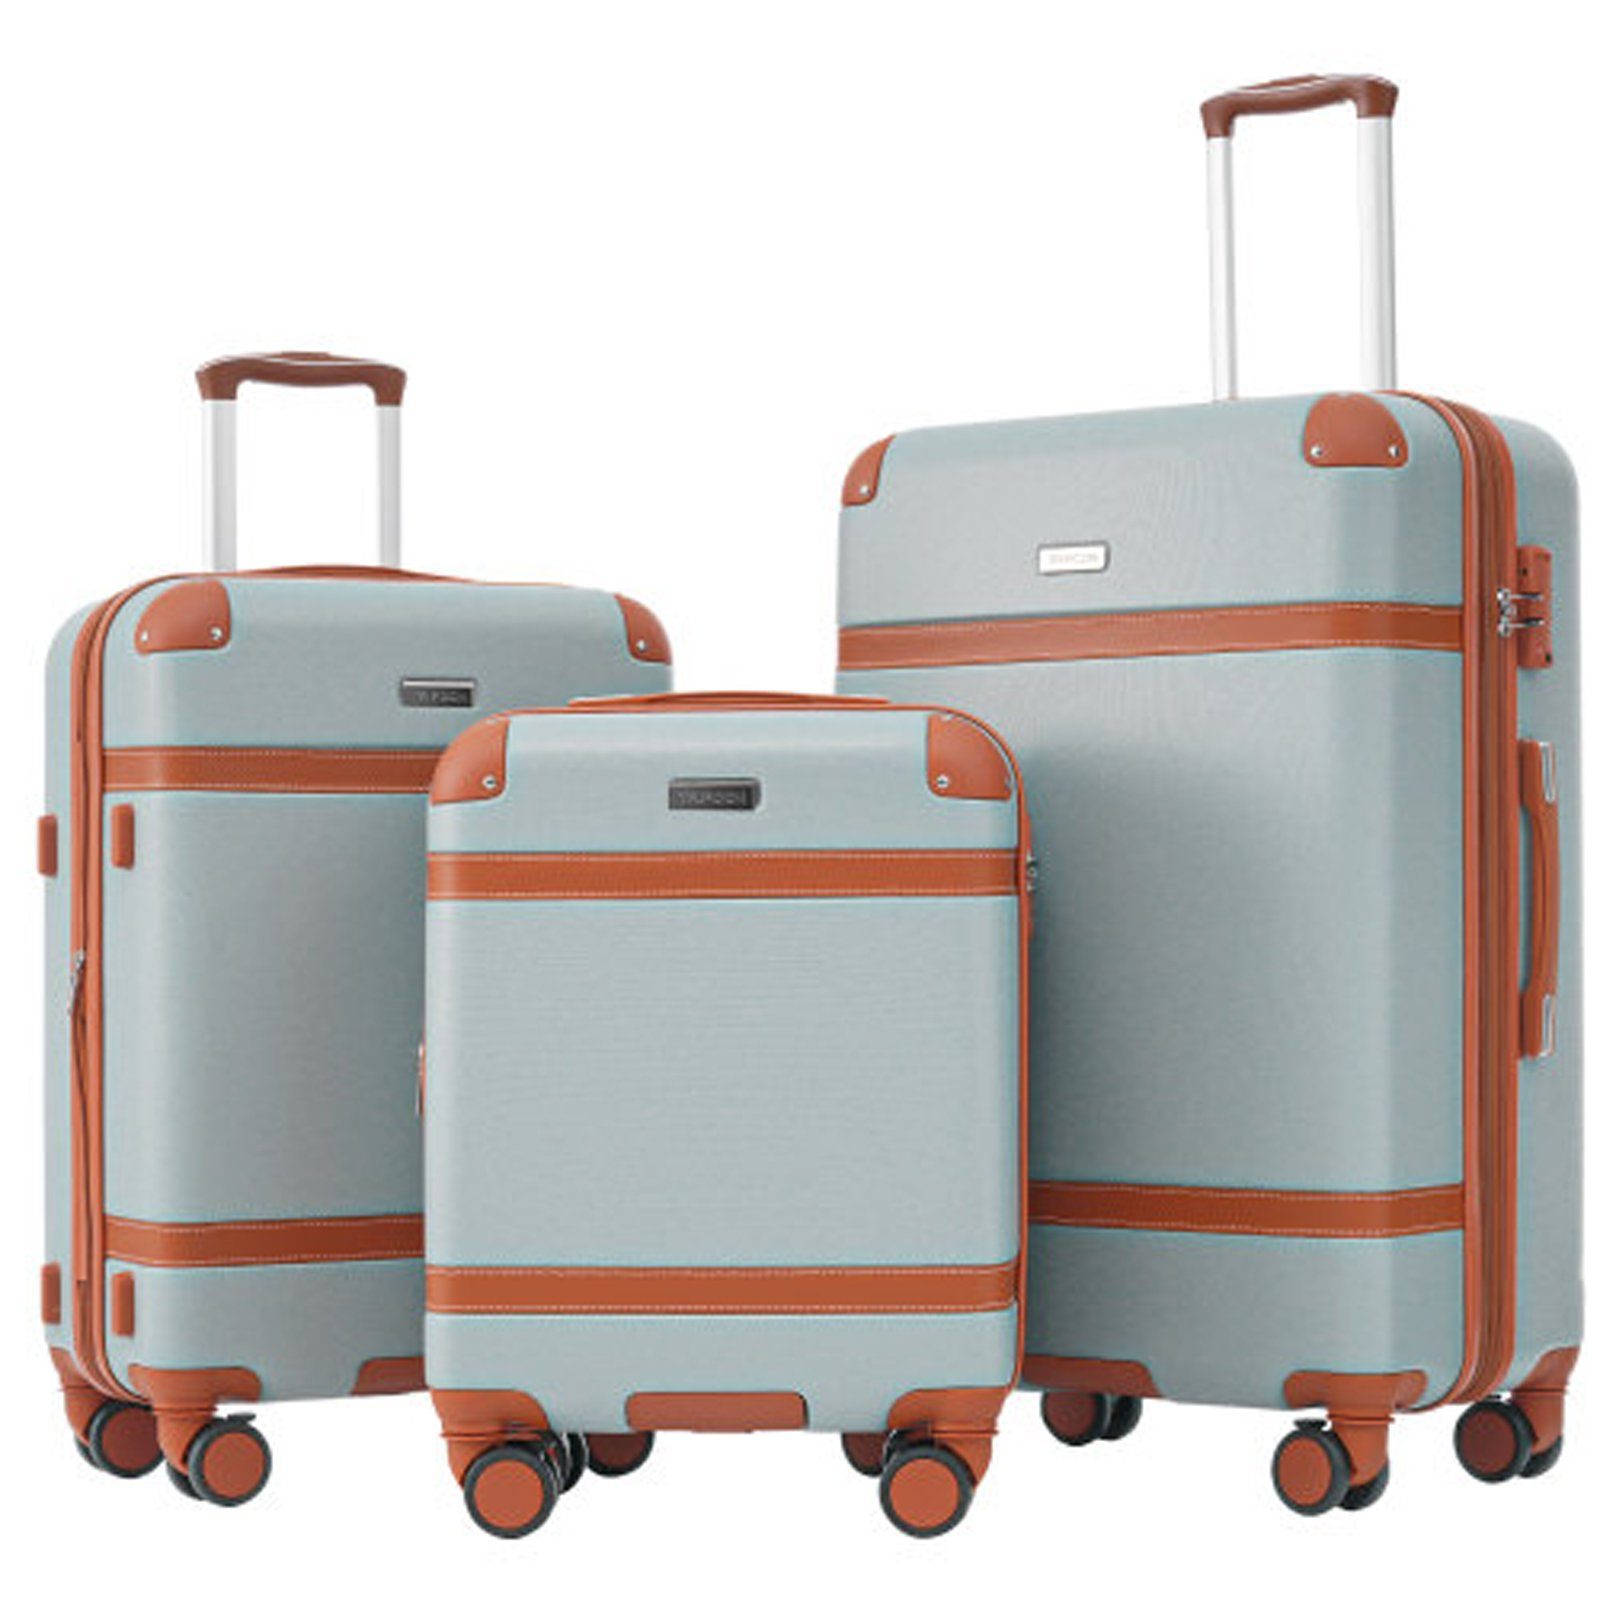 SEEZSSA Kofferset Kofferset 3-in-1-Kofferset Handgepäck Rollen, 4 ABS-Material aus Trolleyset,Kofferset hellgrün+braun